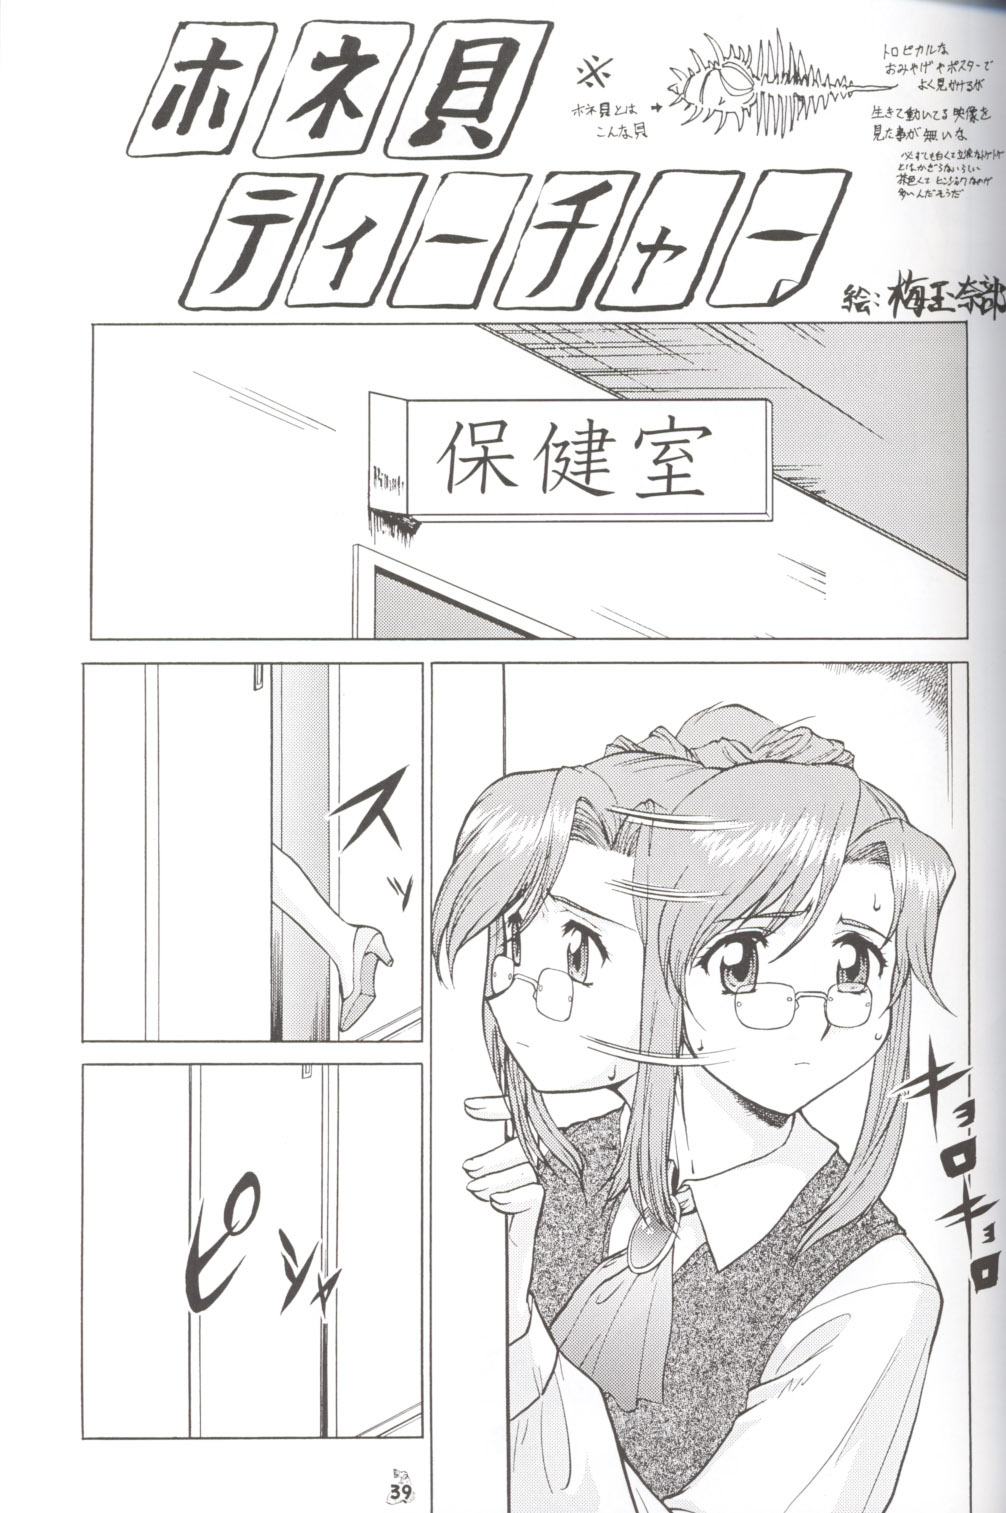 (CR33) [Tsurikichi Doumei (Umedama Nabu)] Nise - Umedamanga Shuu (Various) page 38 full